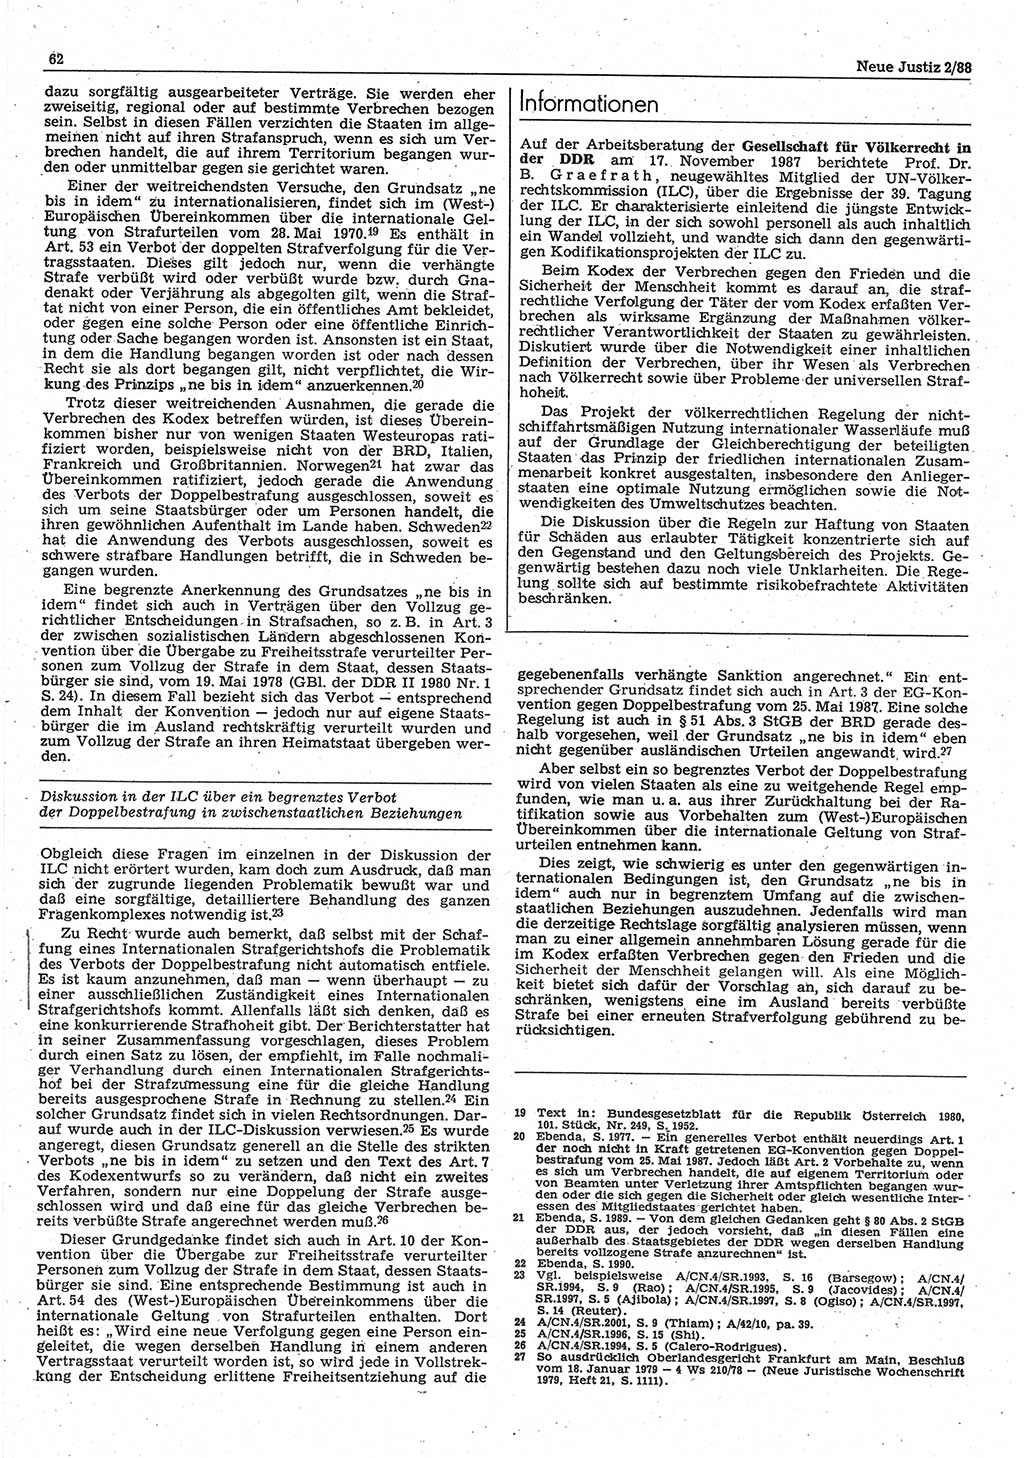 Neue Justiz (NJ), Zeitschrift für sozialistisches Recht und Gesetzlichkeit [Deutsche Demokratische Republik (DDR)], 42. Jahrgang 1988, Seite 62 (NJ DDR 1988, S. 62)